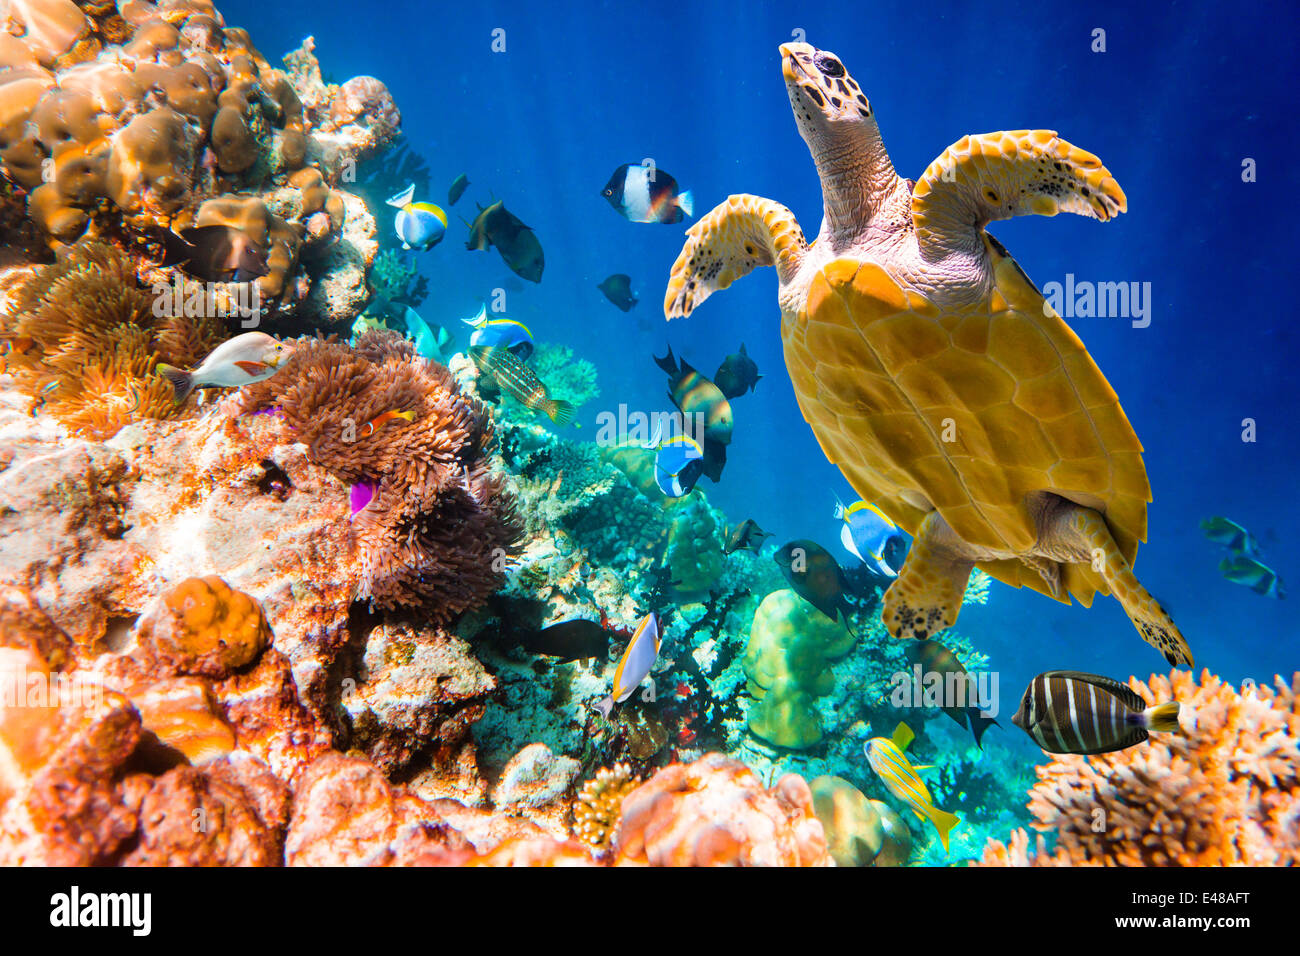 La tortuga carey, Eretmochelys imbricata, flota en el agua. Maldivas arrecifes de coral del Océano Índico. Foto de stock